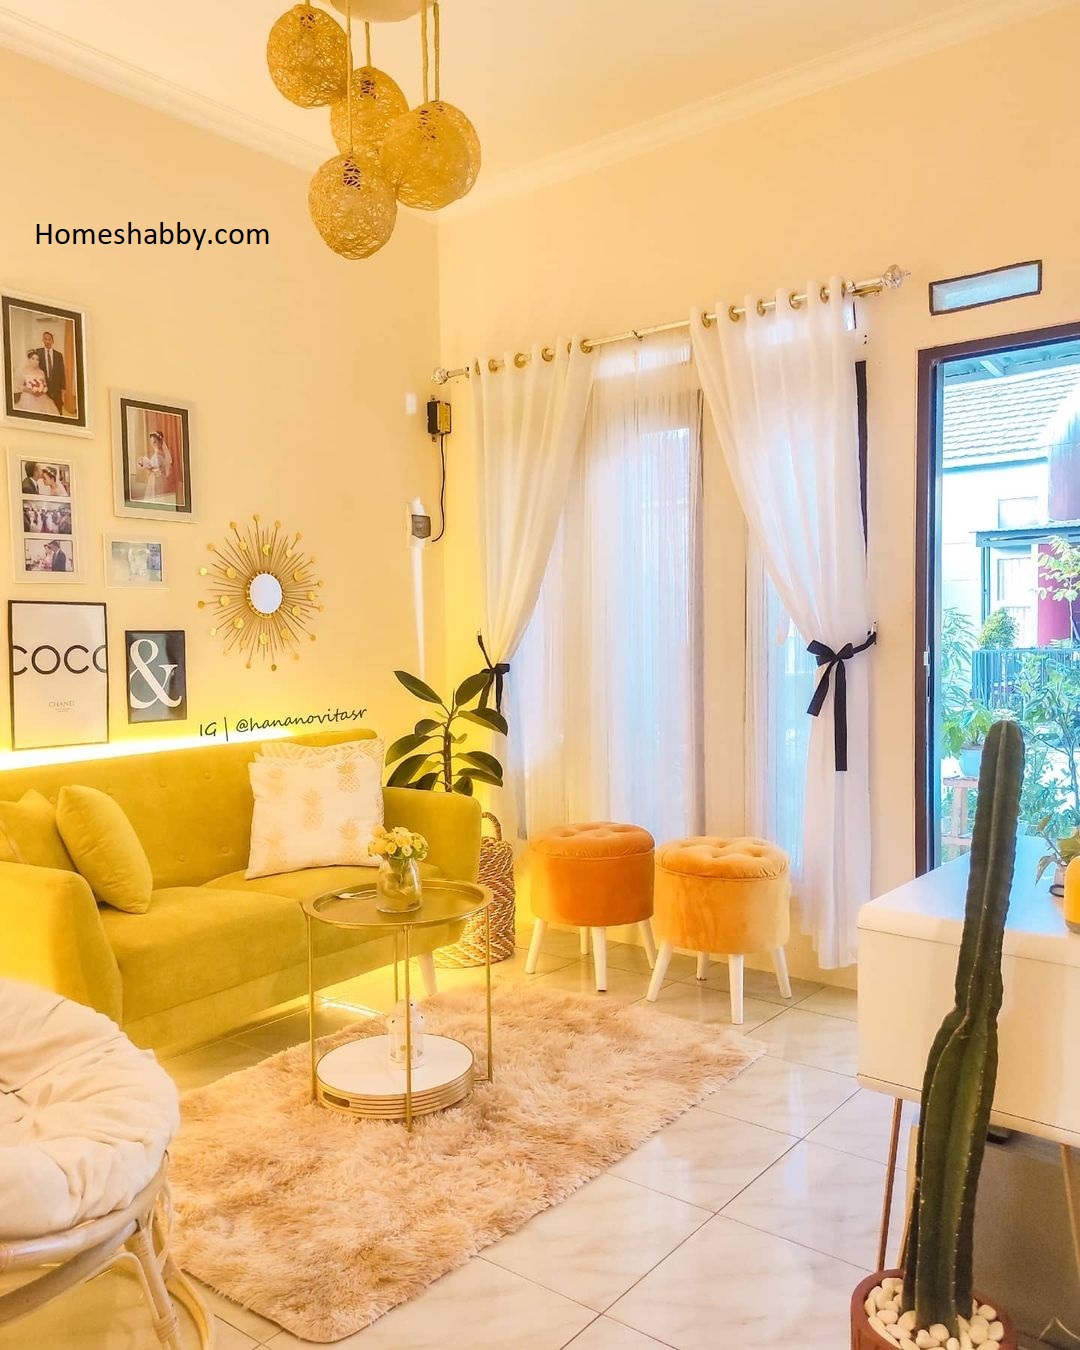 Rumah Lebih Menarik, Ide Dekorasi Ruangan Warna Kuning ~ Homeshabby.com